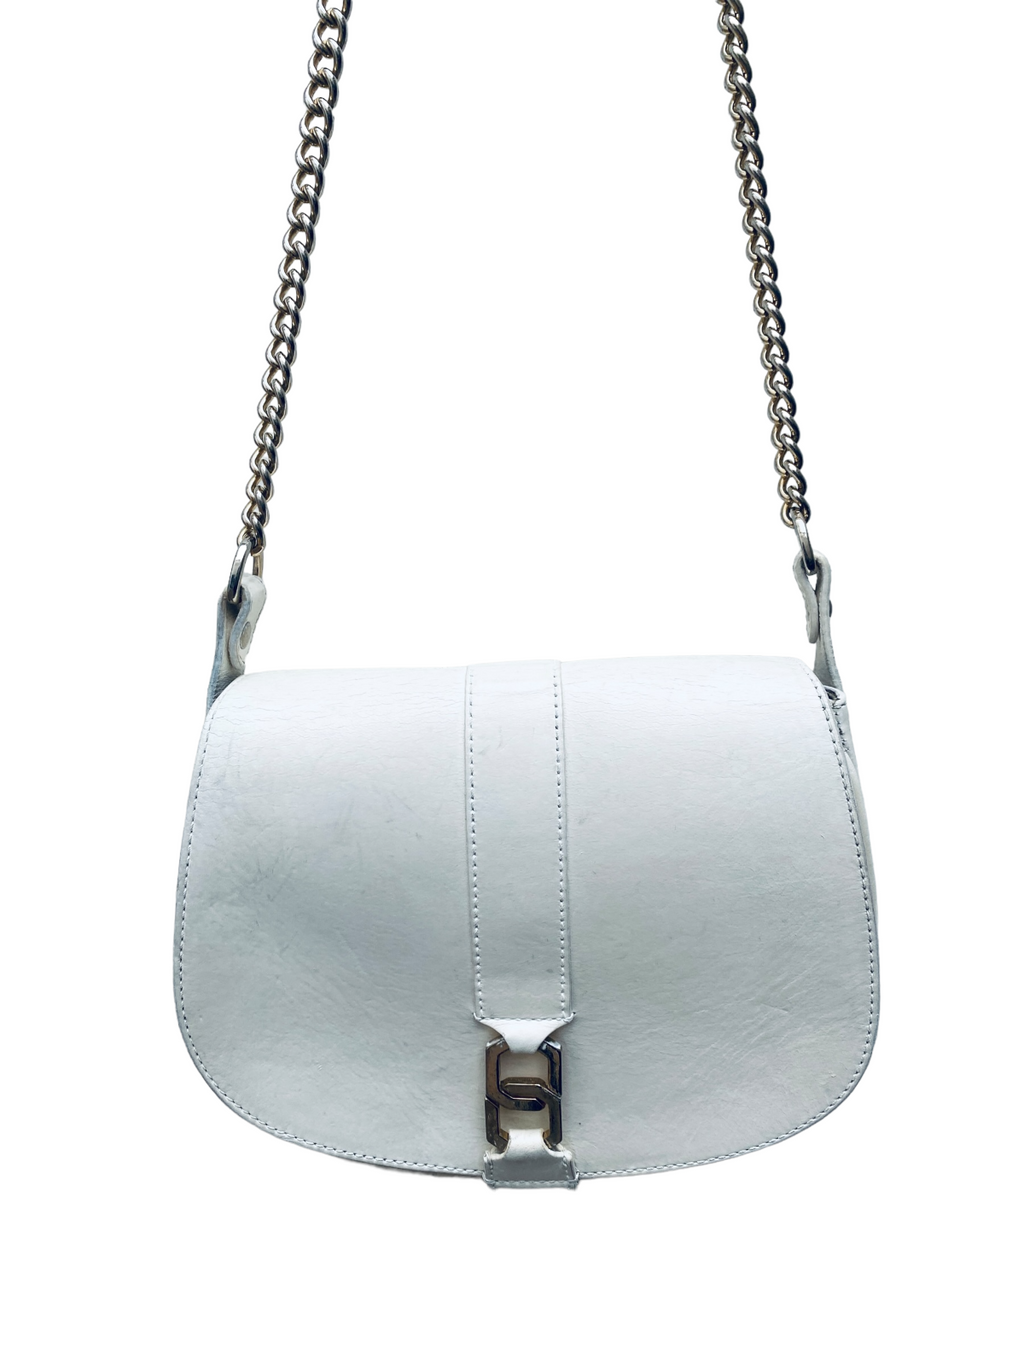 White Leather Shoulder Bag Handbag  Gold Color Chain